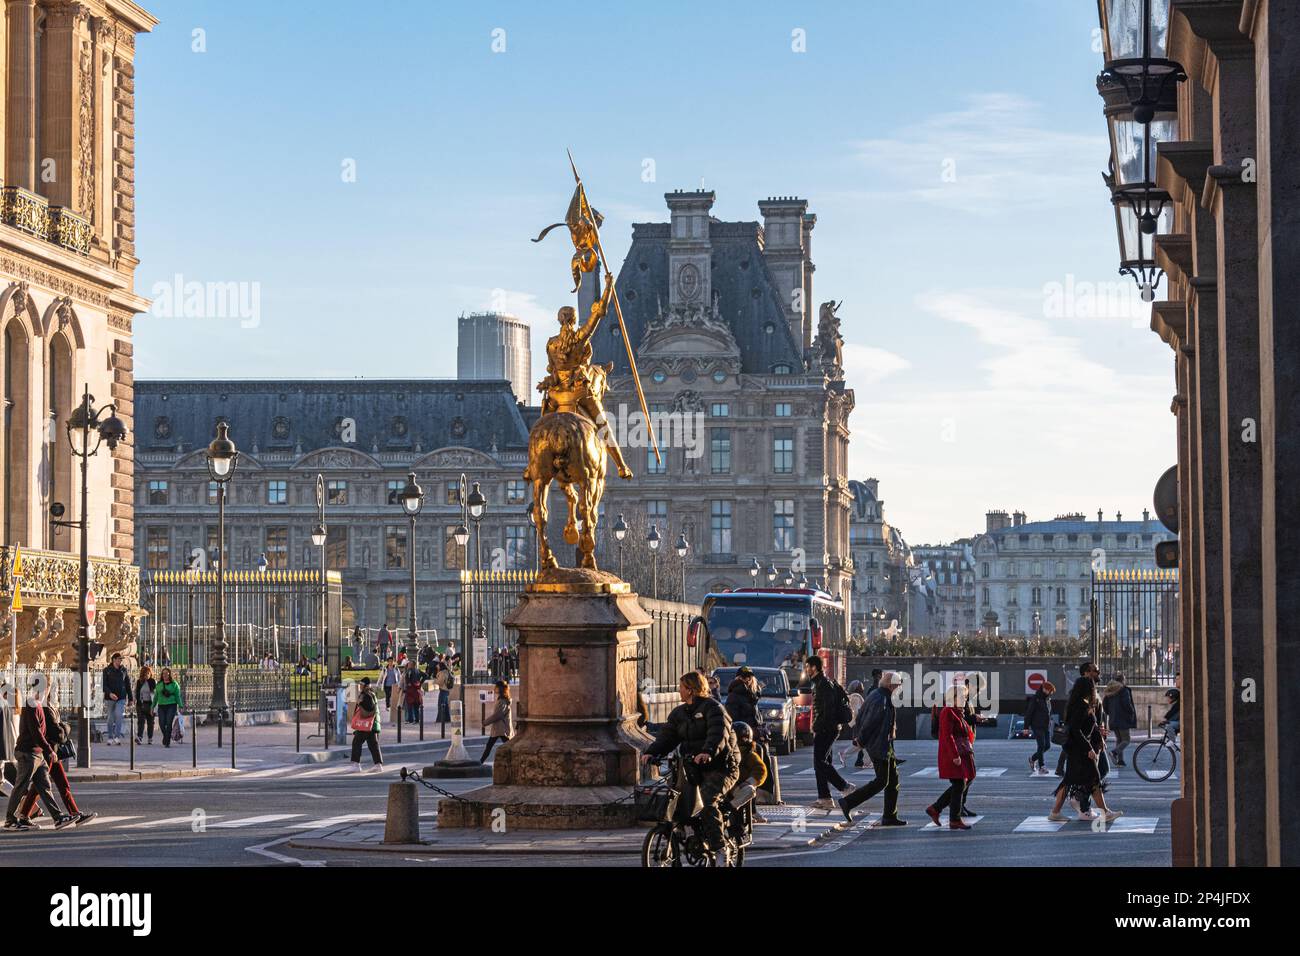 La statua equestre dorata di bronzo di Giovanna d'Arco nella Place des Pyramides, il Musee des Arts Decoratifs può essere visto dietro, Parigi, Francia. Foto Stock